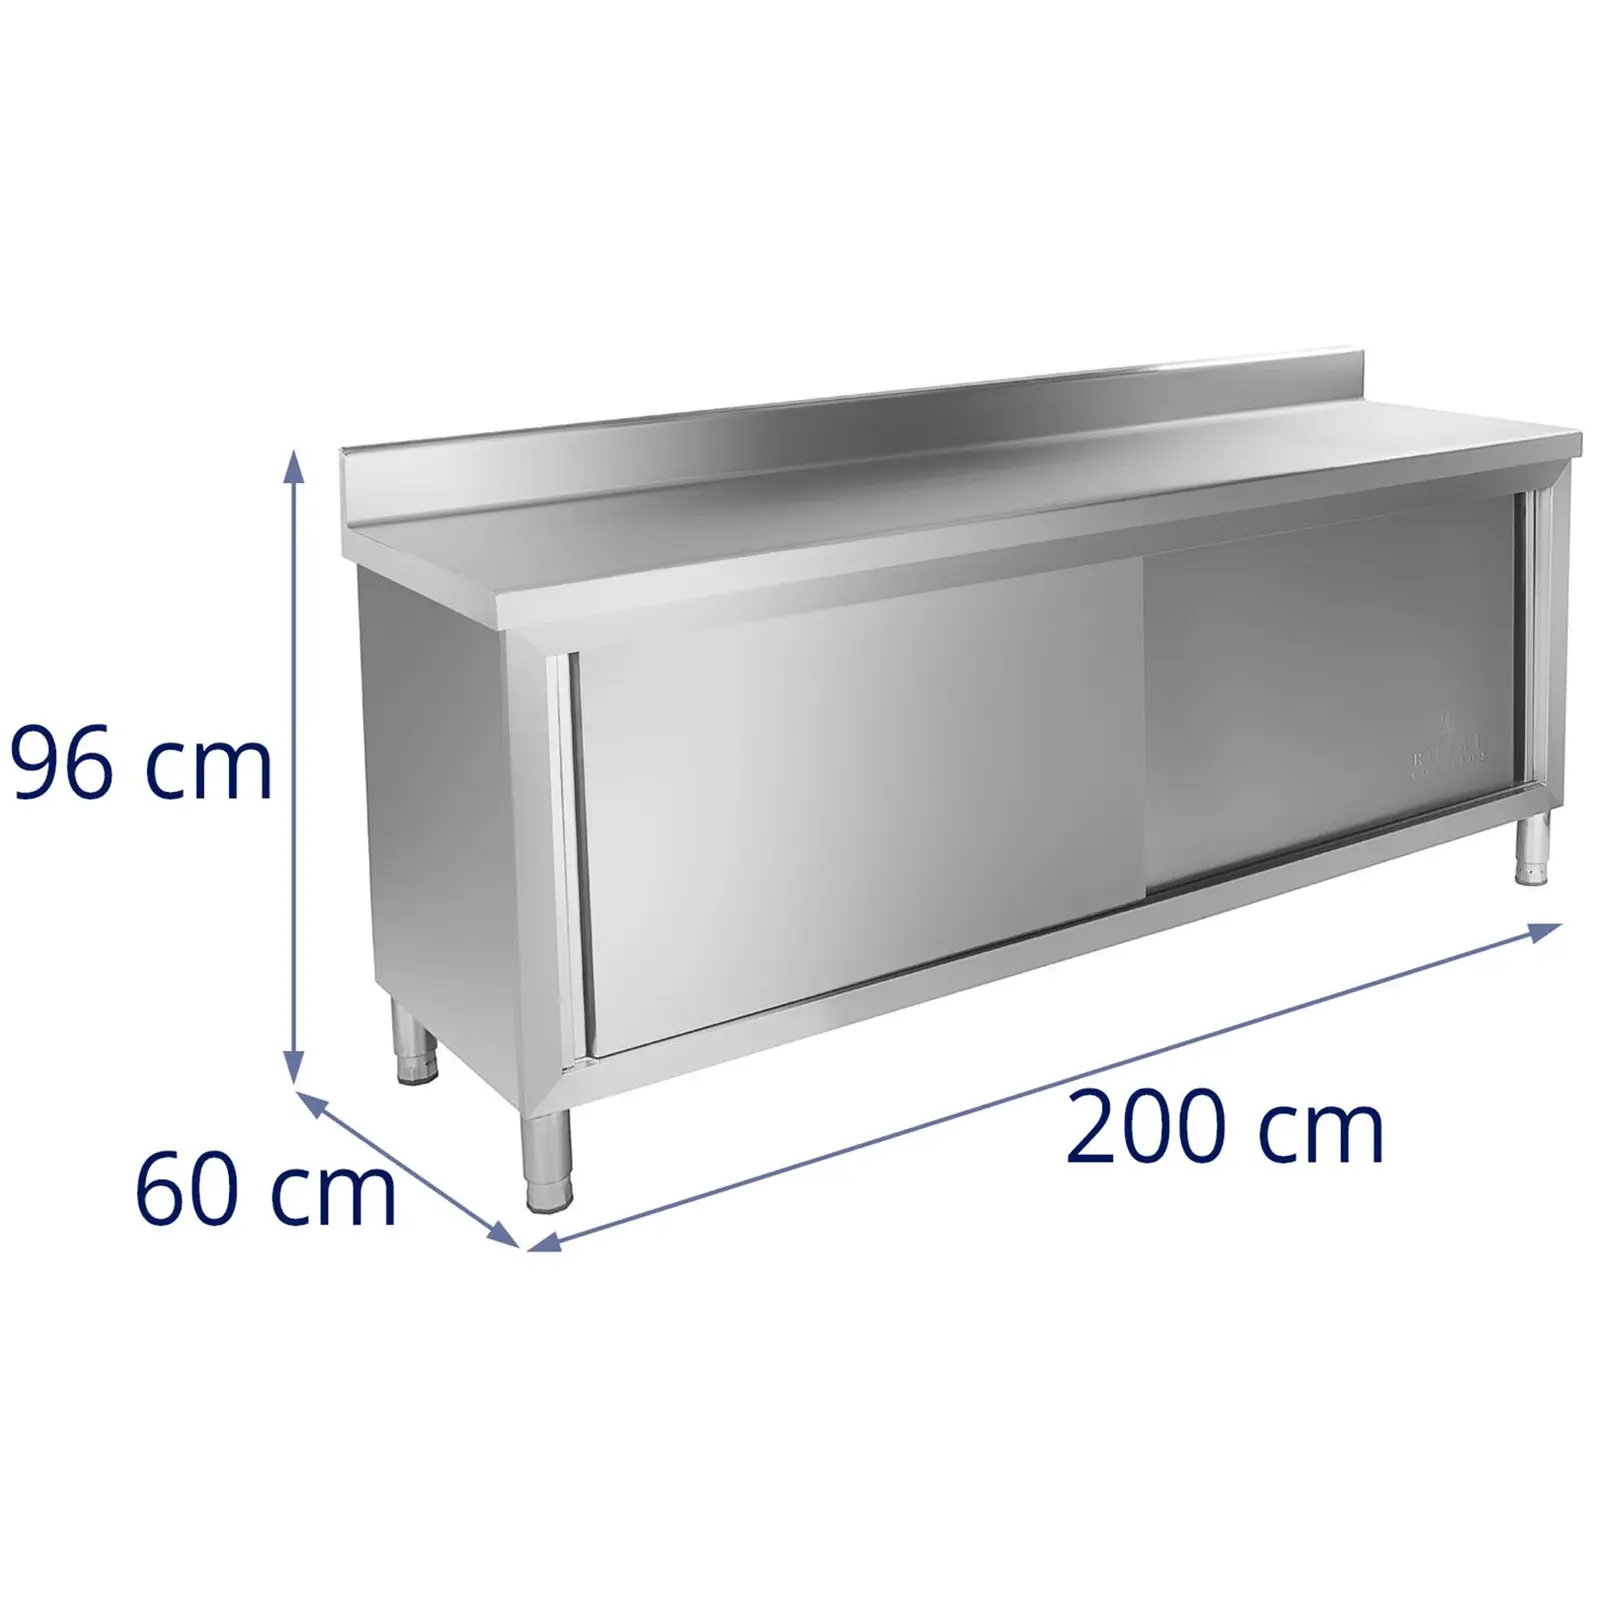 Работен шкаф - 200 x 60 см - повдигнат - 160 кг